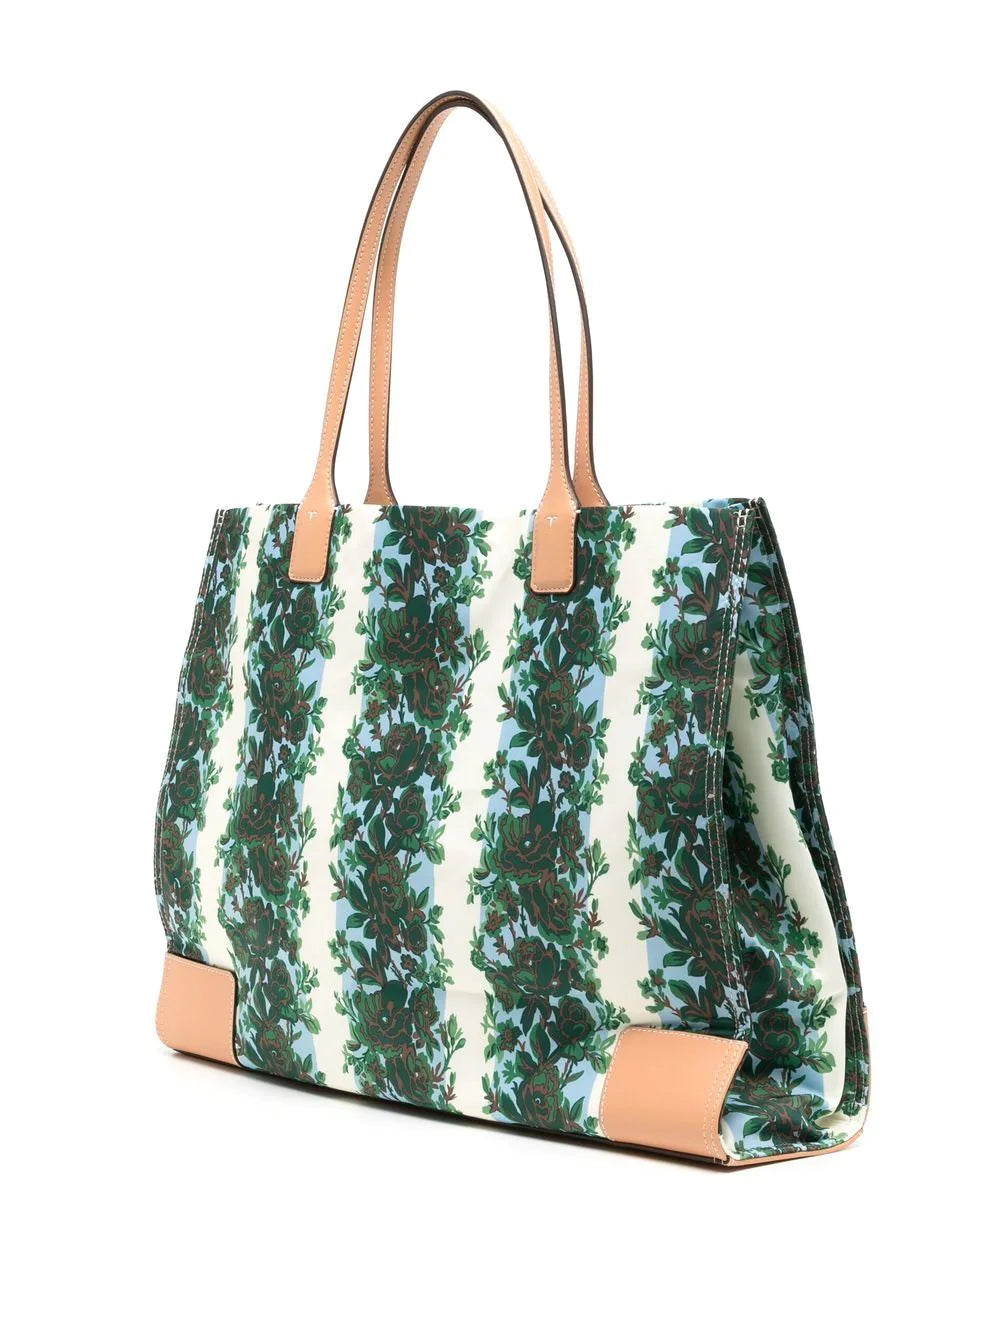 Ella Tote Bag: Women's Handbags, Tote Bags